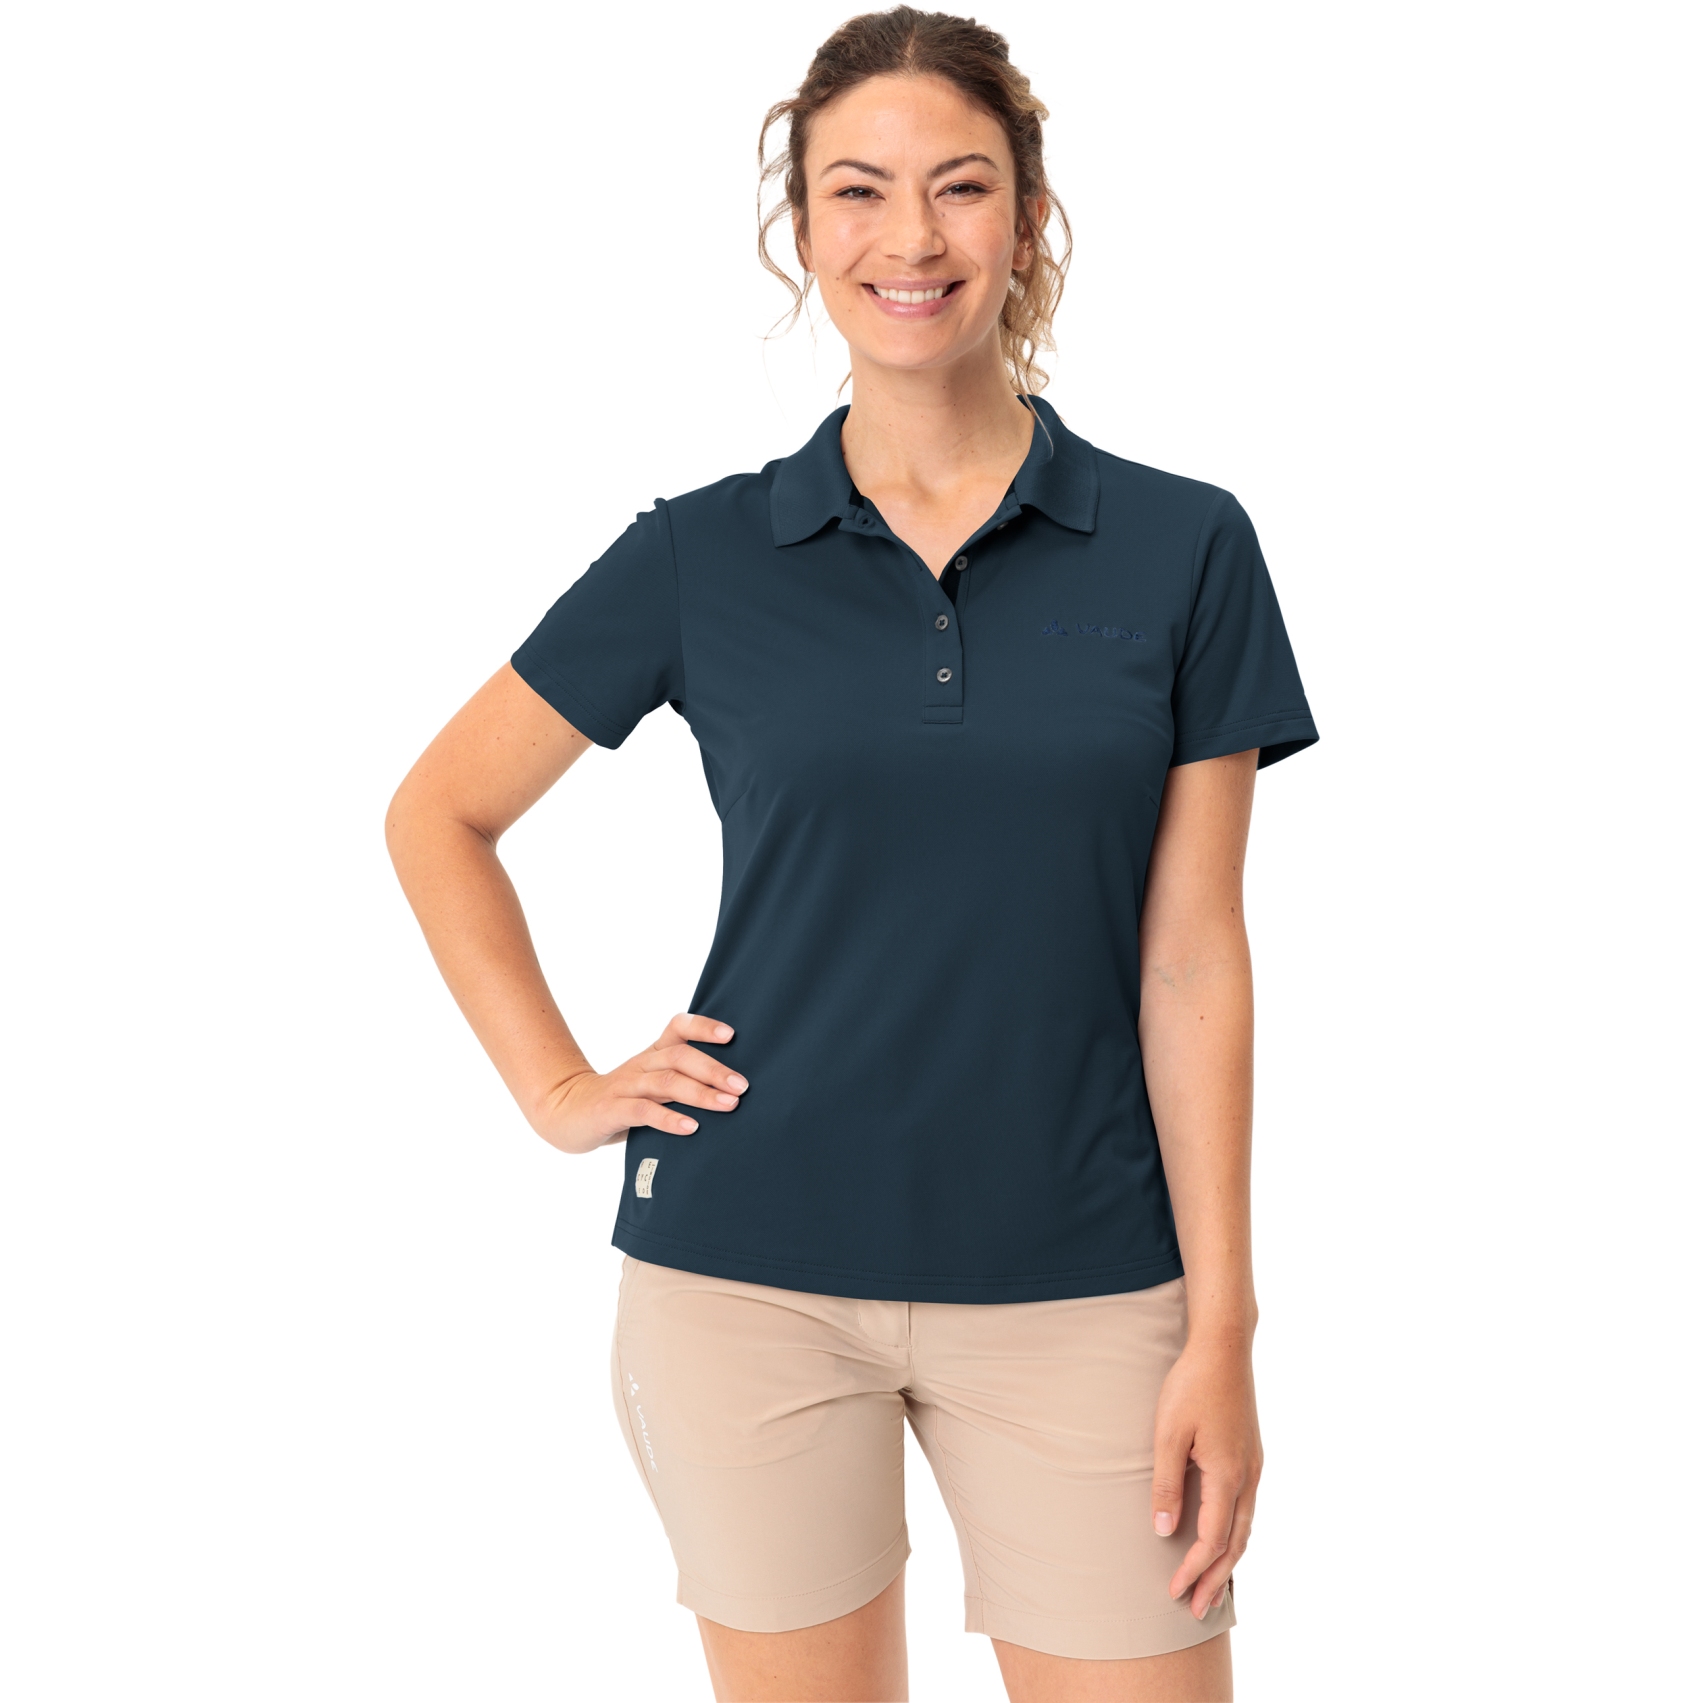 Produktbild von Vaude Essential Polo Shirt Damen - dark sea